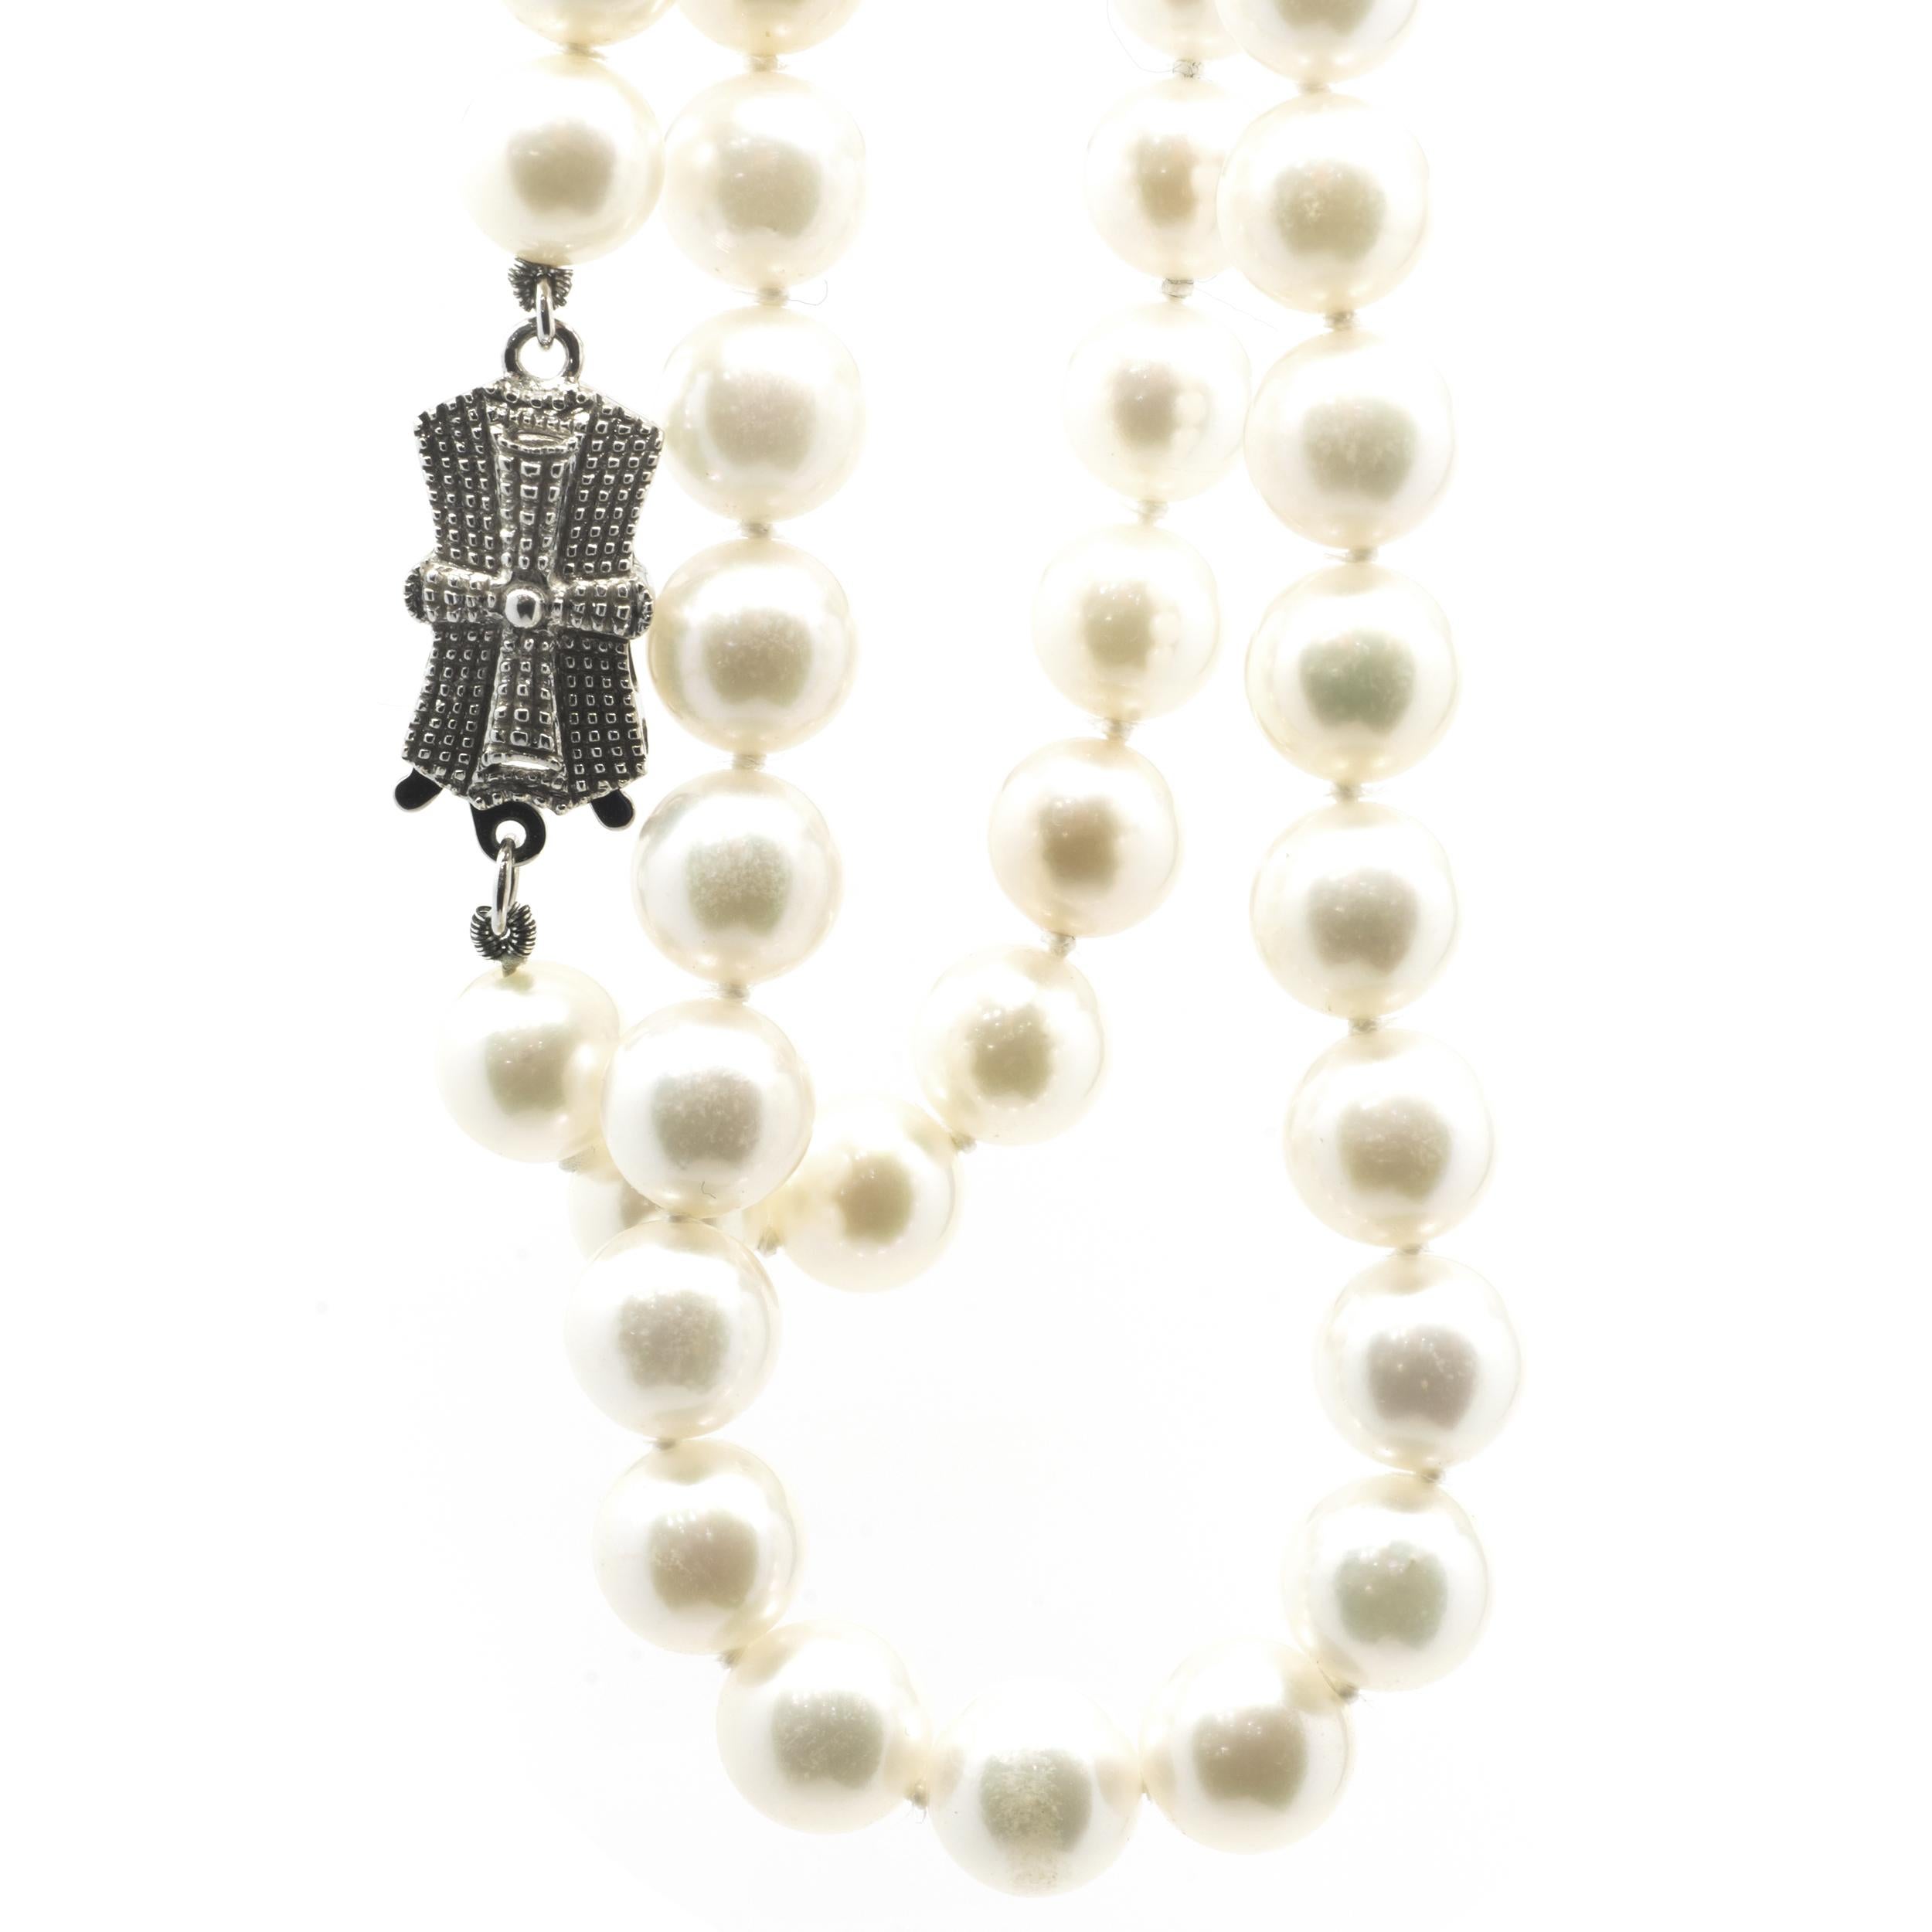 Designer: Benutzerdefiniert
Material: 14K Weißgold
Perle: gezüchtetes Süßwasser = 6,7mm
Abmessungen: Halskette misst 18-Zoll in der Länge
Gewicht: 28,56 Gramm
